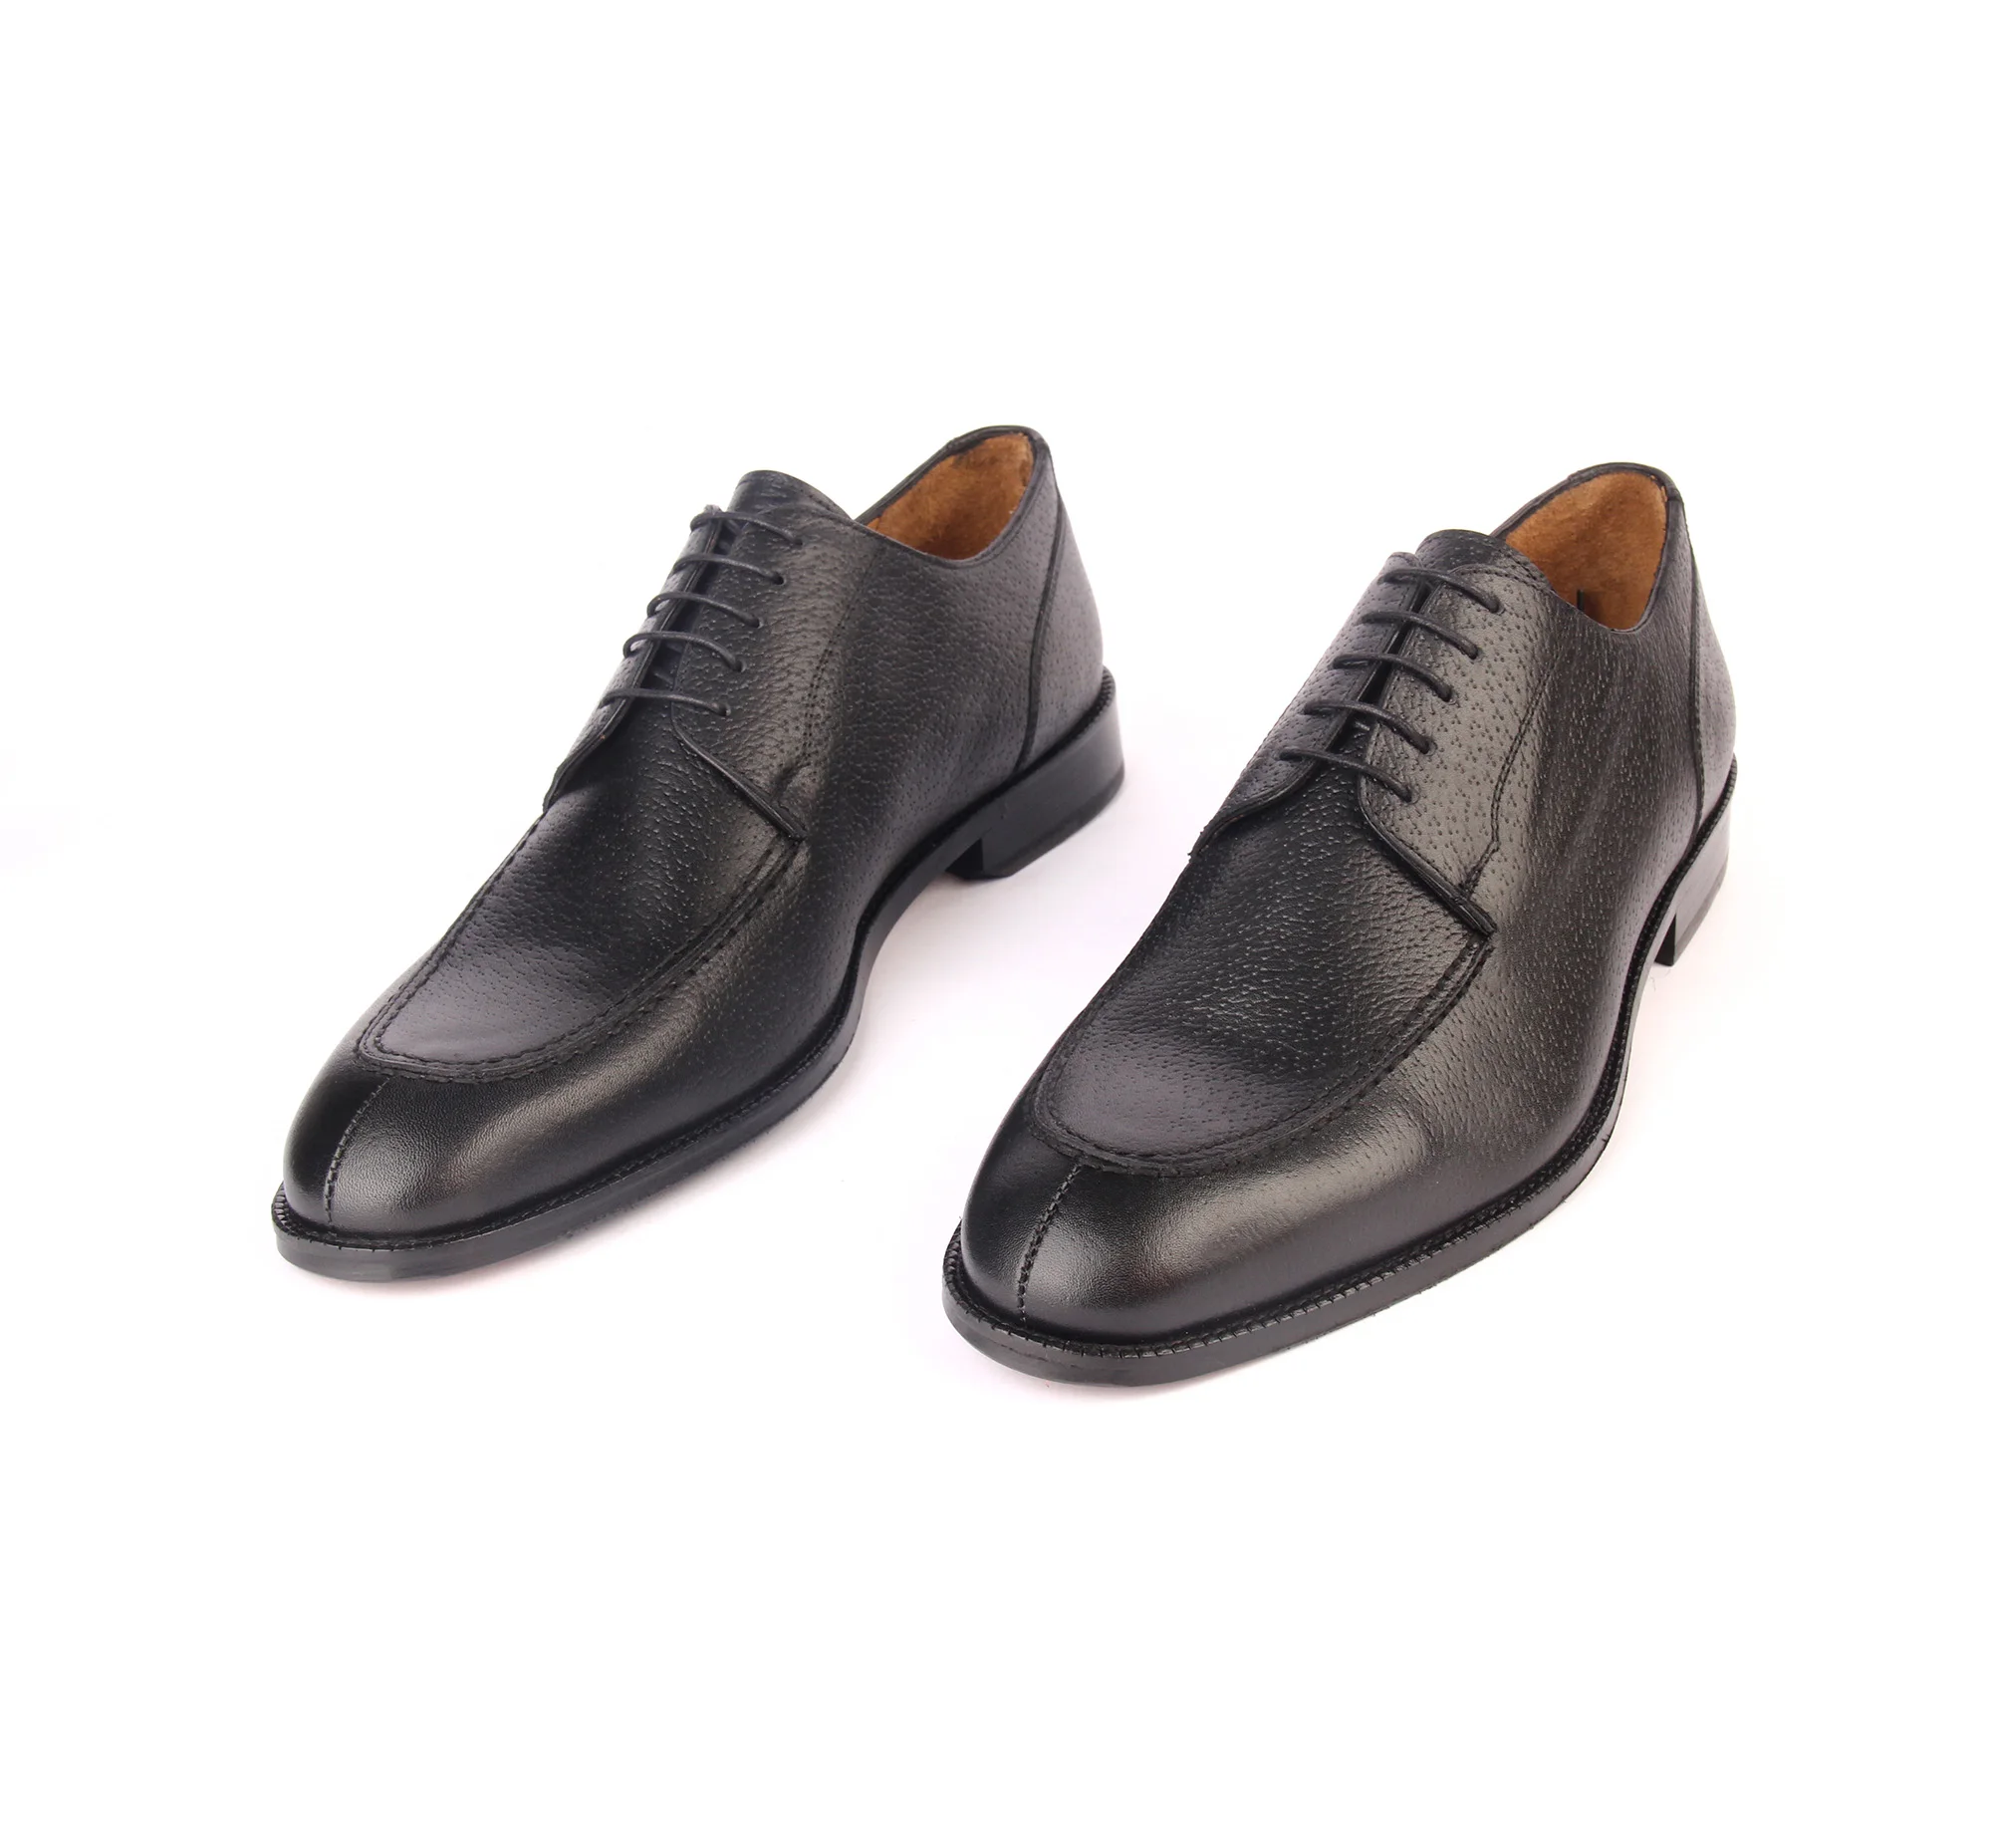 Ruční Malba, originální kožené pánské mokasíny klasické boty z měkké kůže černé barvy